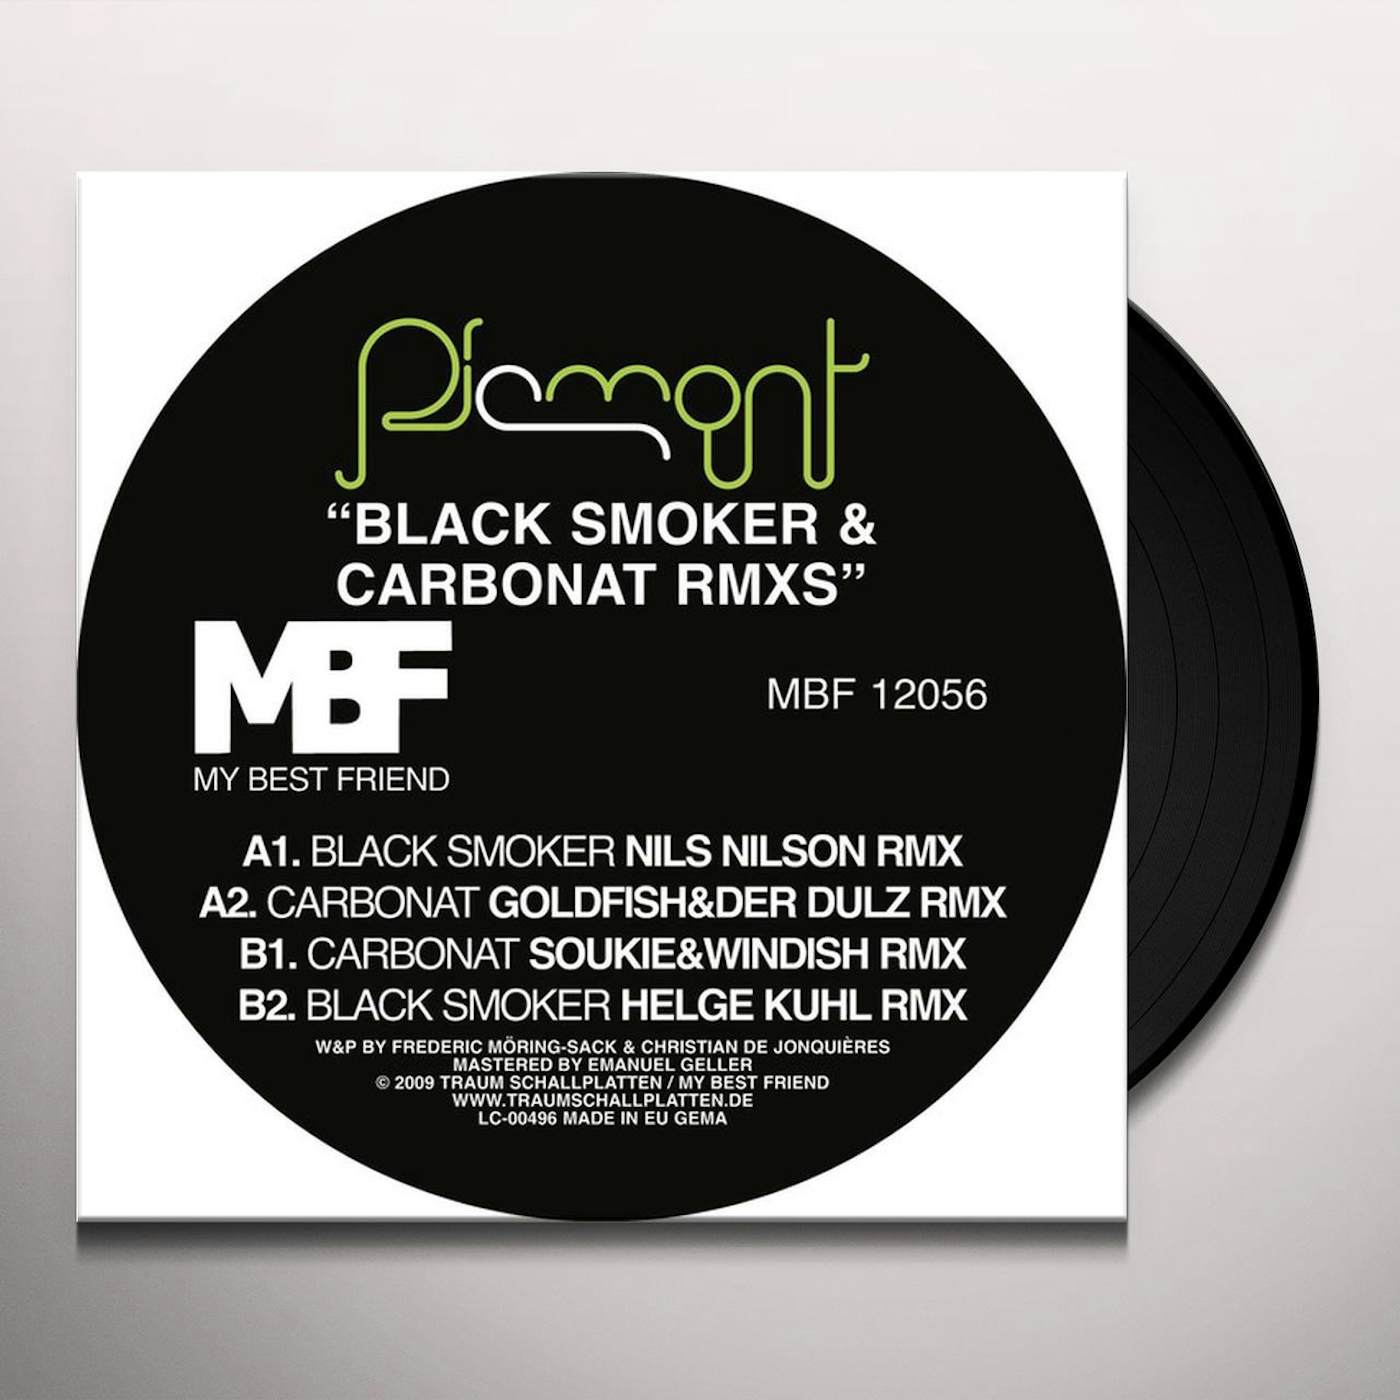 Piemont Black Smoker & Carbonat Rmxs Vinyl Record